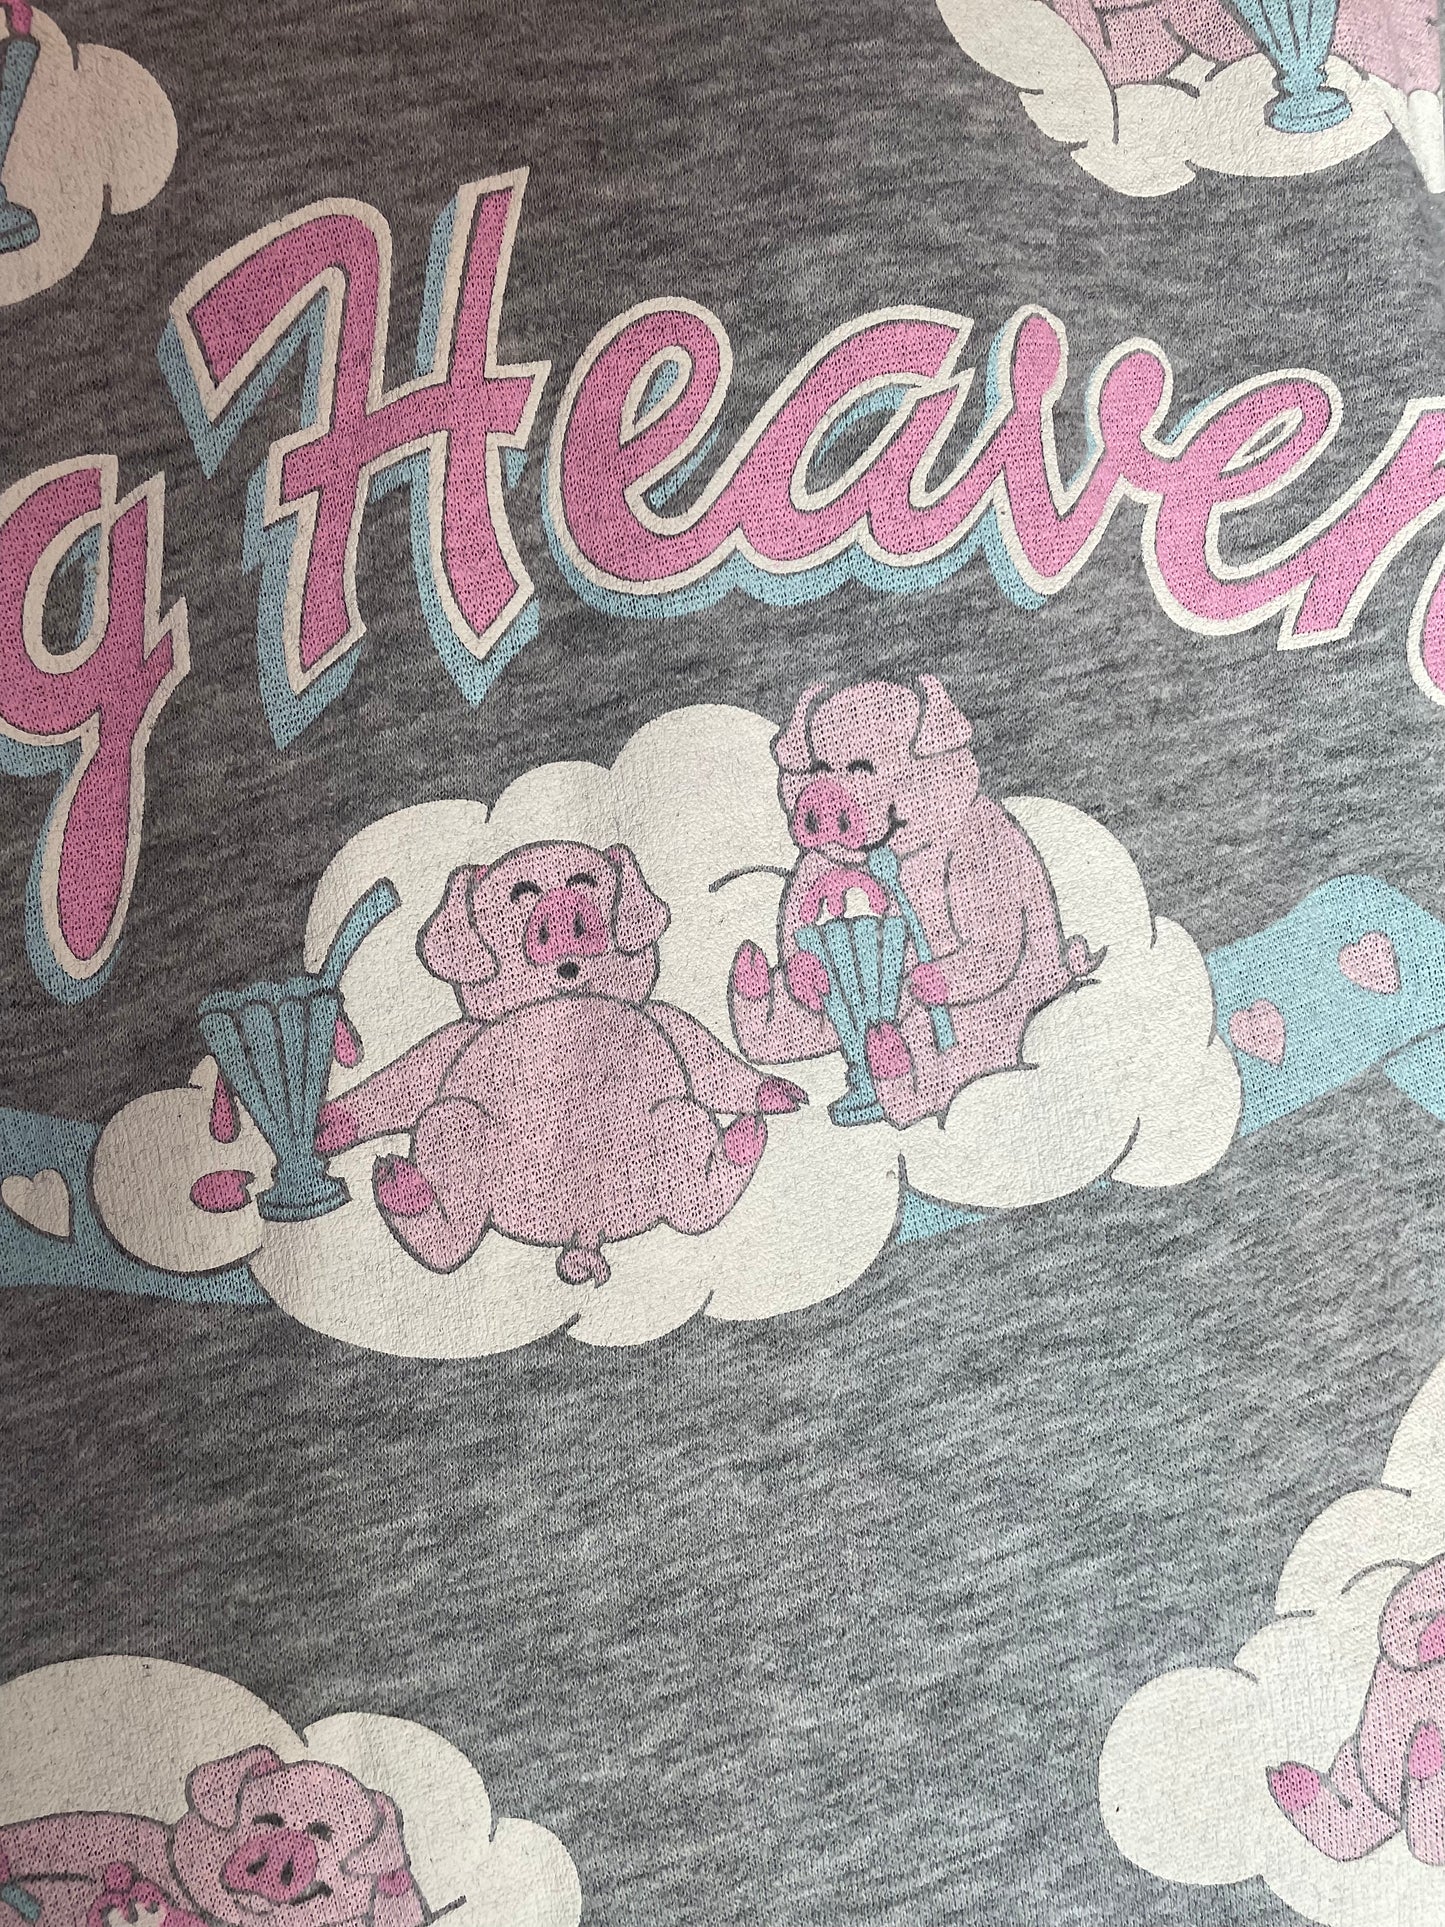 Vintage 80s Hog Heaven  Sweatshirt